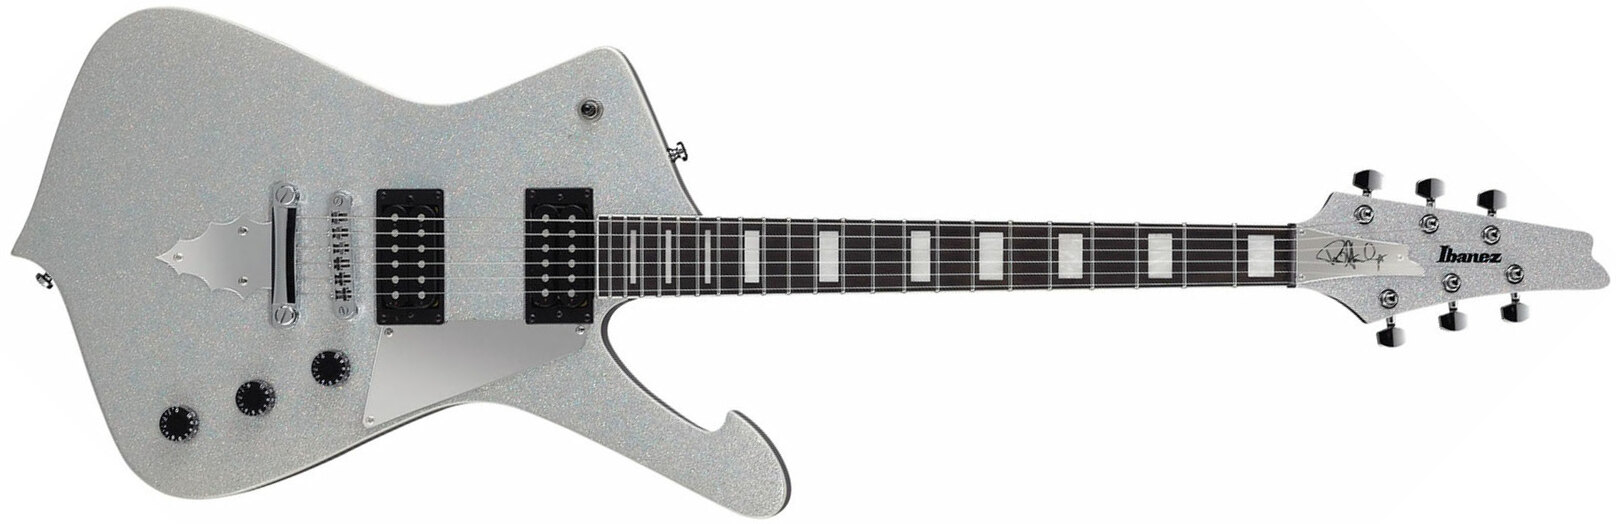 Ibanez Paul Stanley Ps60 Ssl Signature Hh Ht Pur - Silver Sparkle - Metalen elektrische gitaar - Main picture